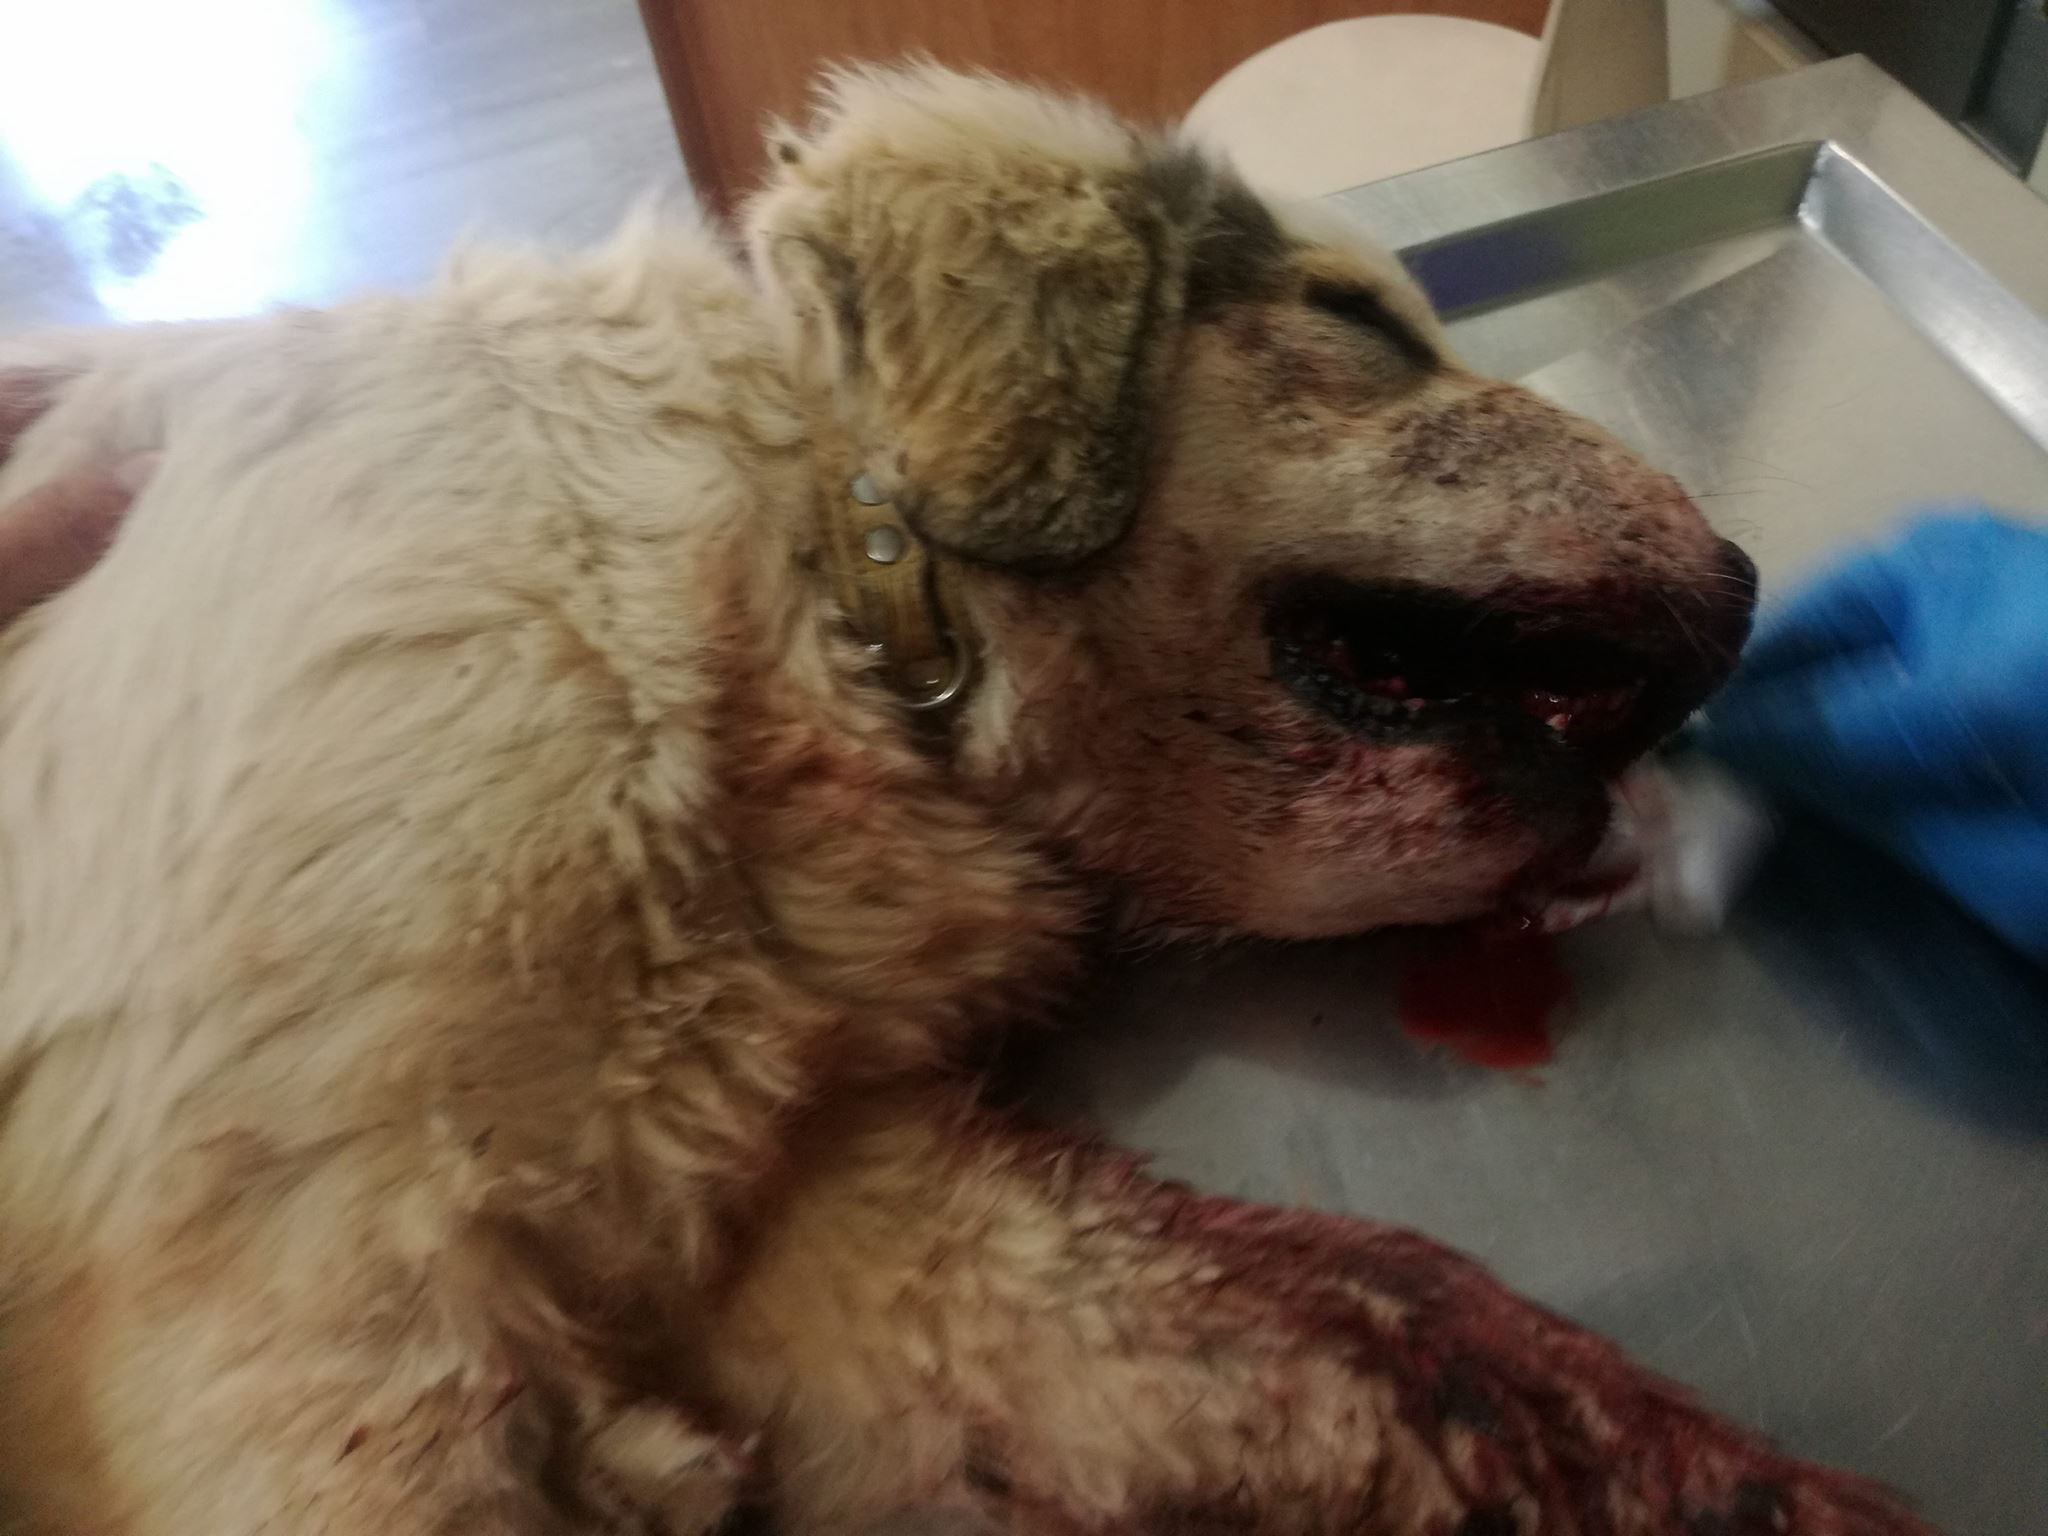 Νέα καταγγελία για κακοποίηση ζώου: Νεκρός σκύλος από κροτίδες που του έβαλαν στο στόμα